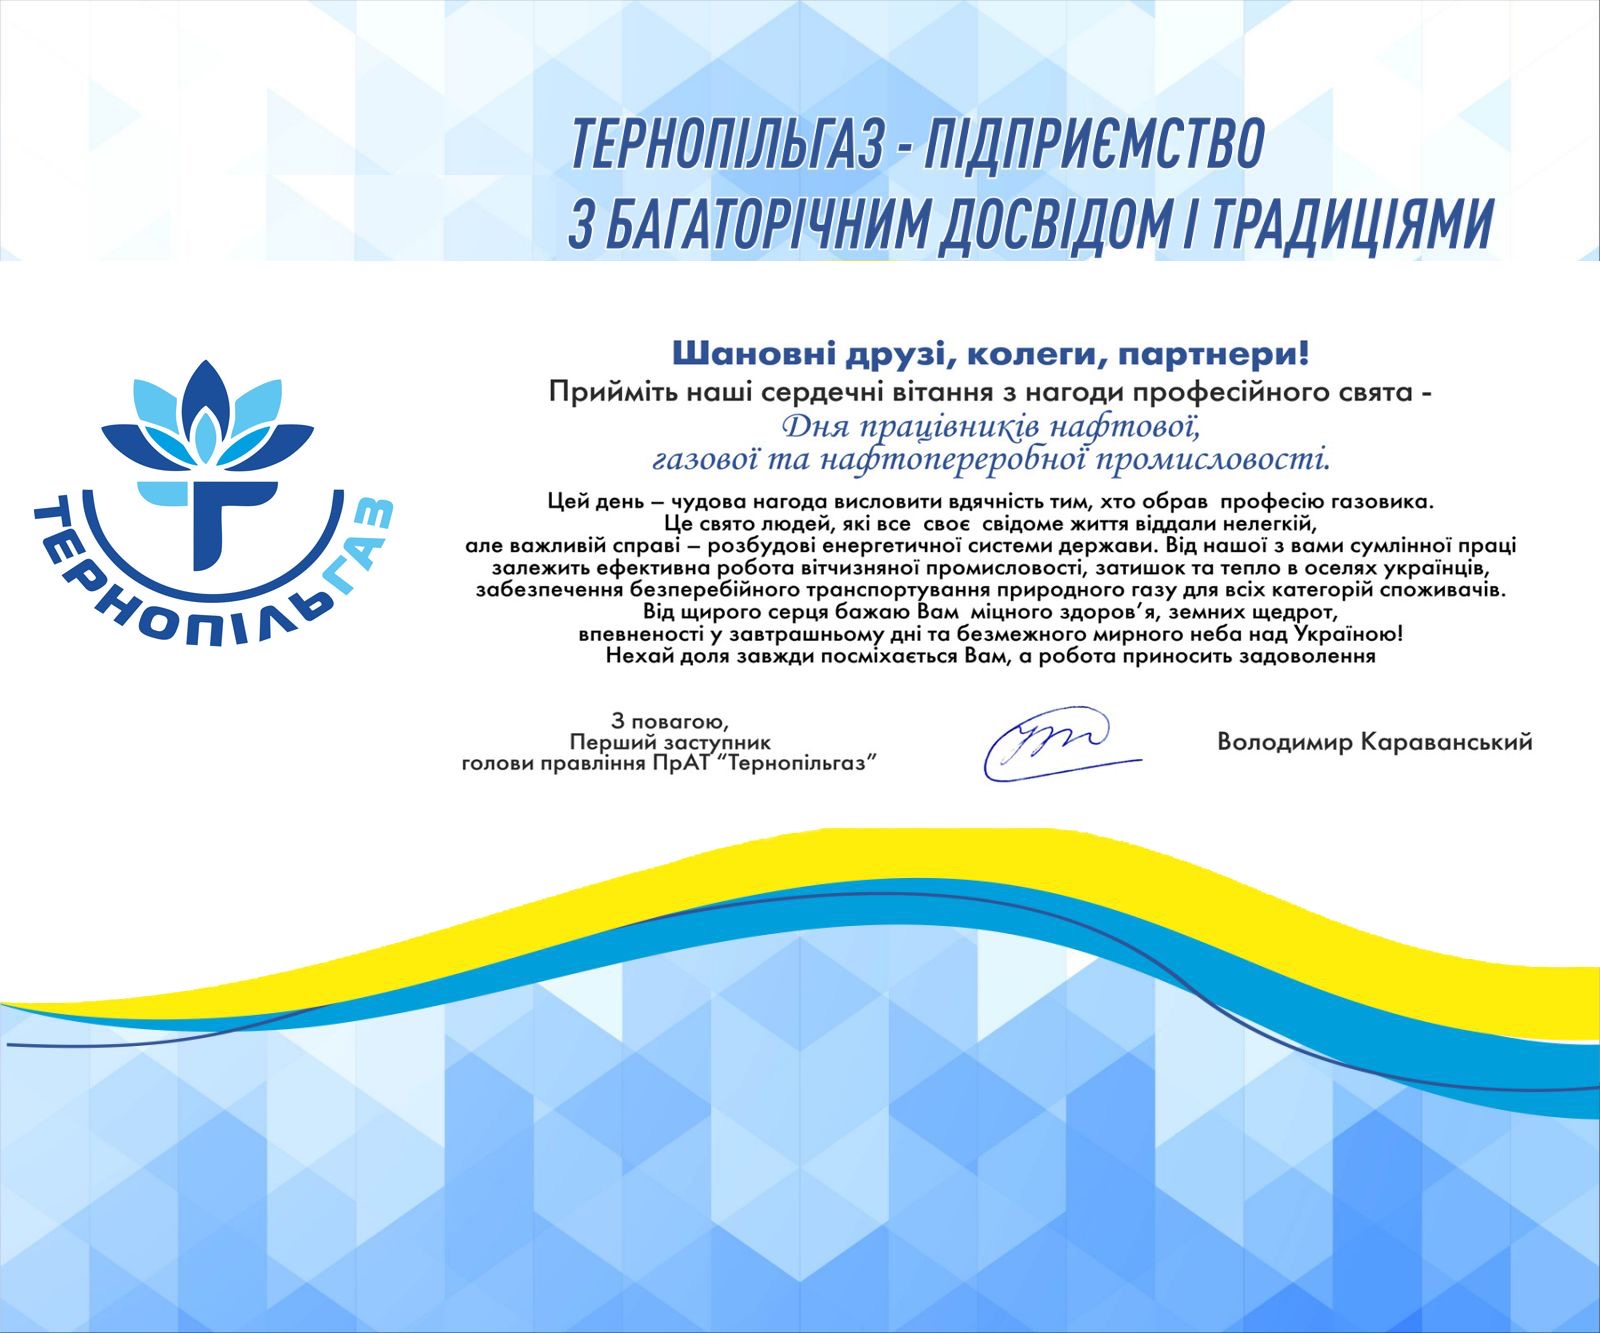 Привітання першого заступника голови правління ПрАТ «Тернопільгаз» з днем працівників нафтової, газової та нафтопереробної промисловості